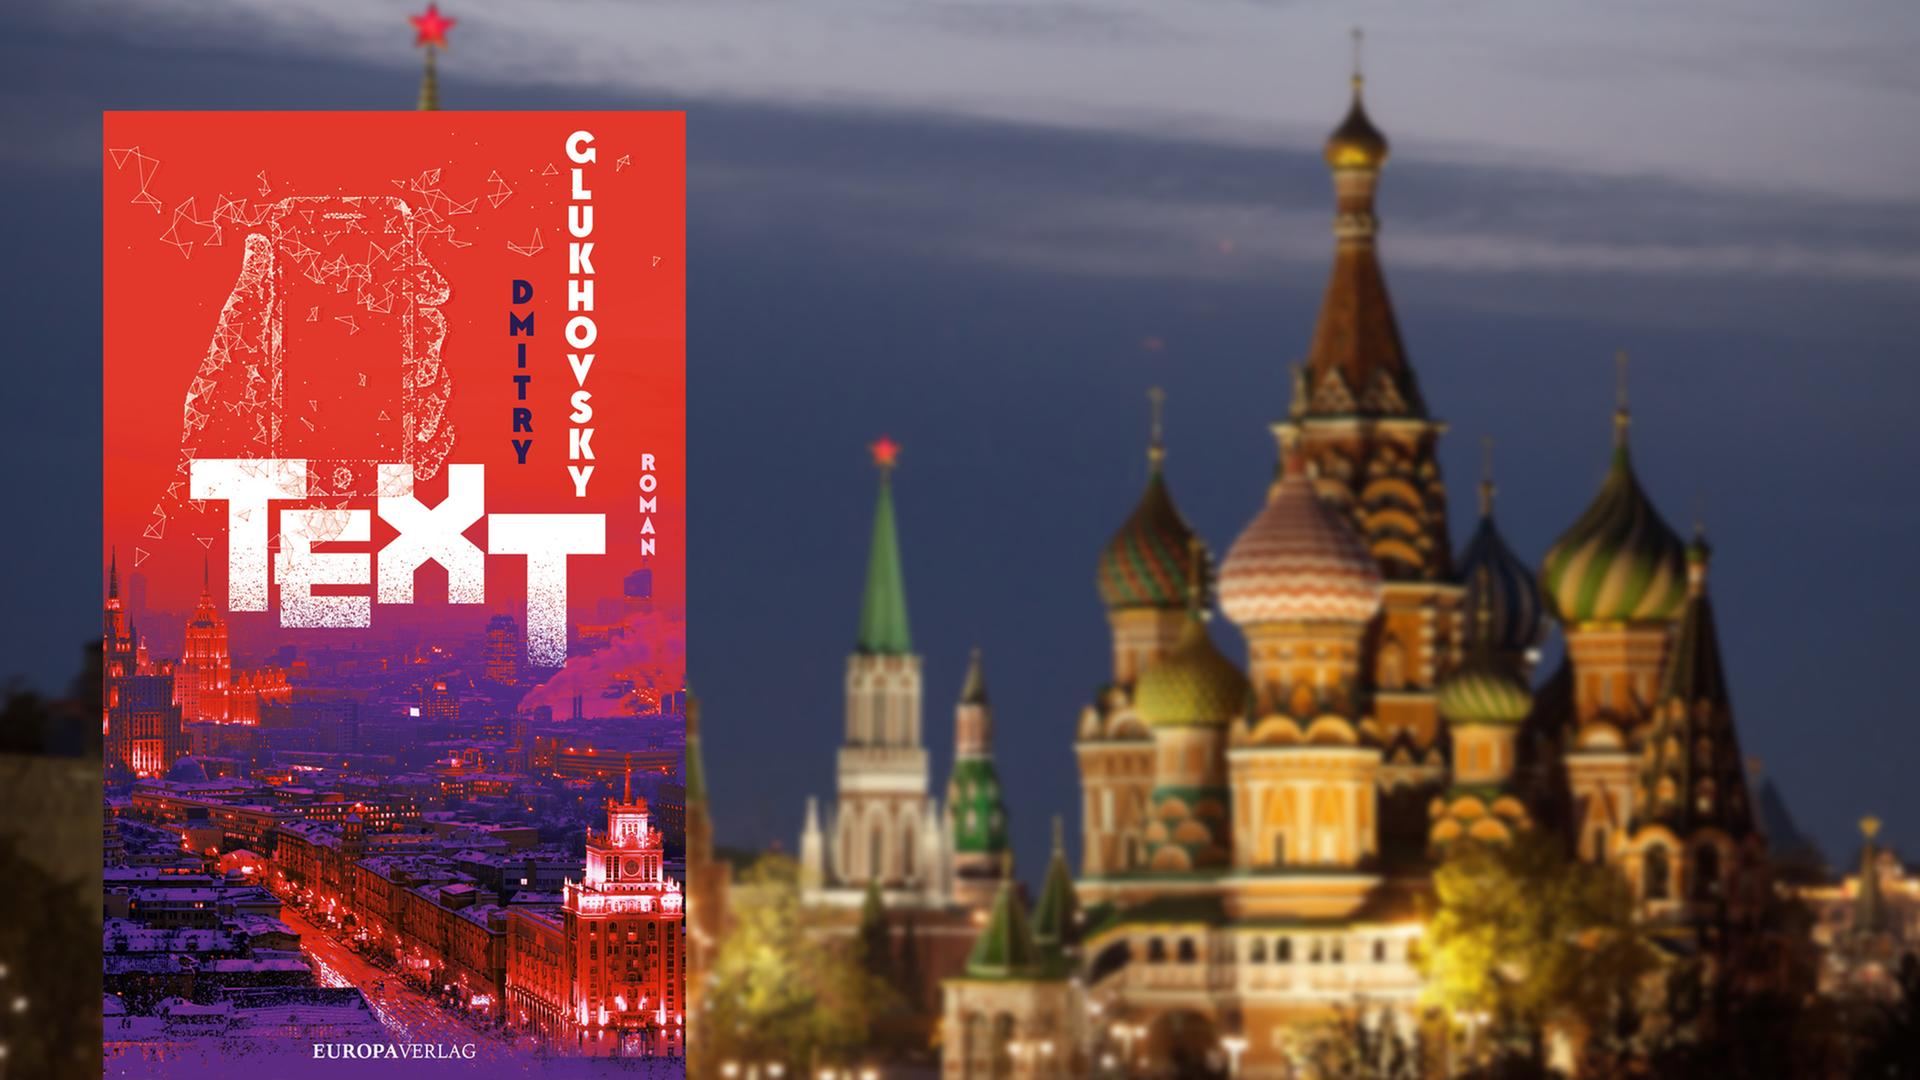 Buchcover Dmitry Glukhovsky: „Text“. Im Hintergrund der Moskau bei Nacht.